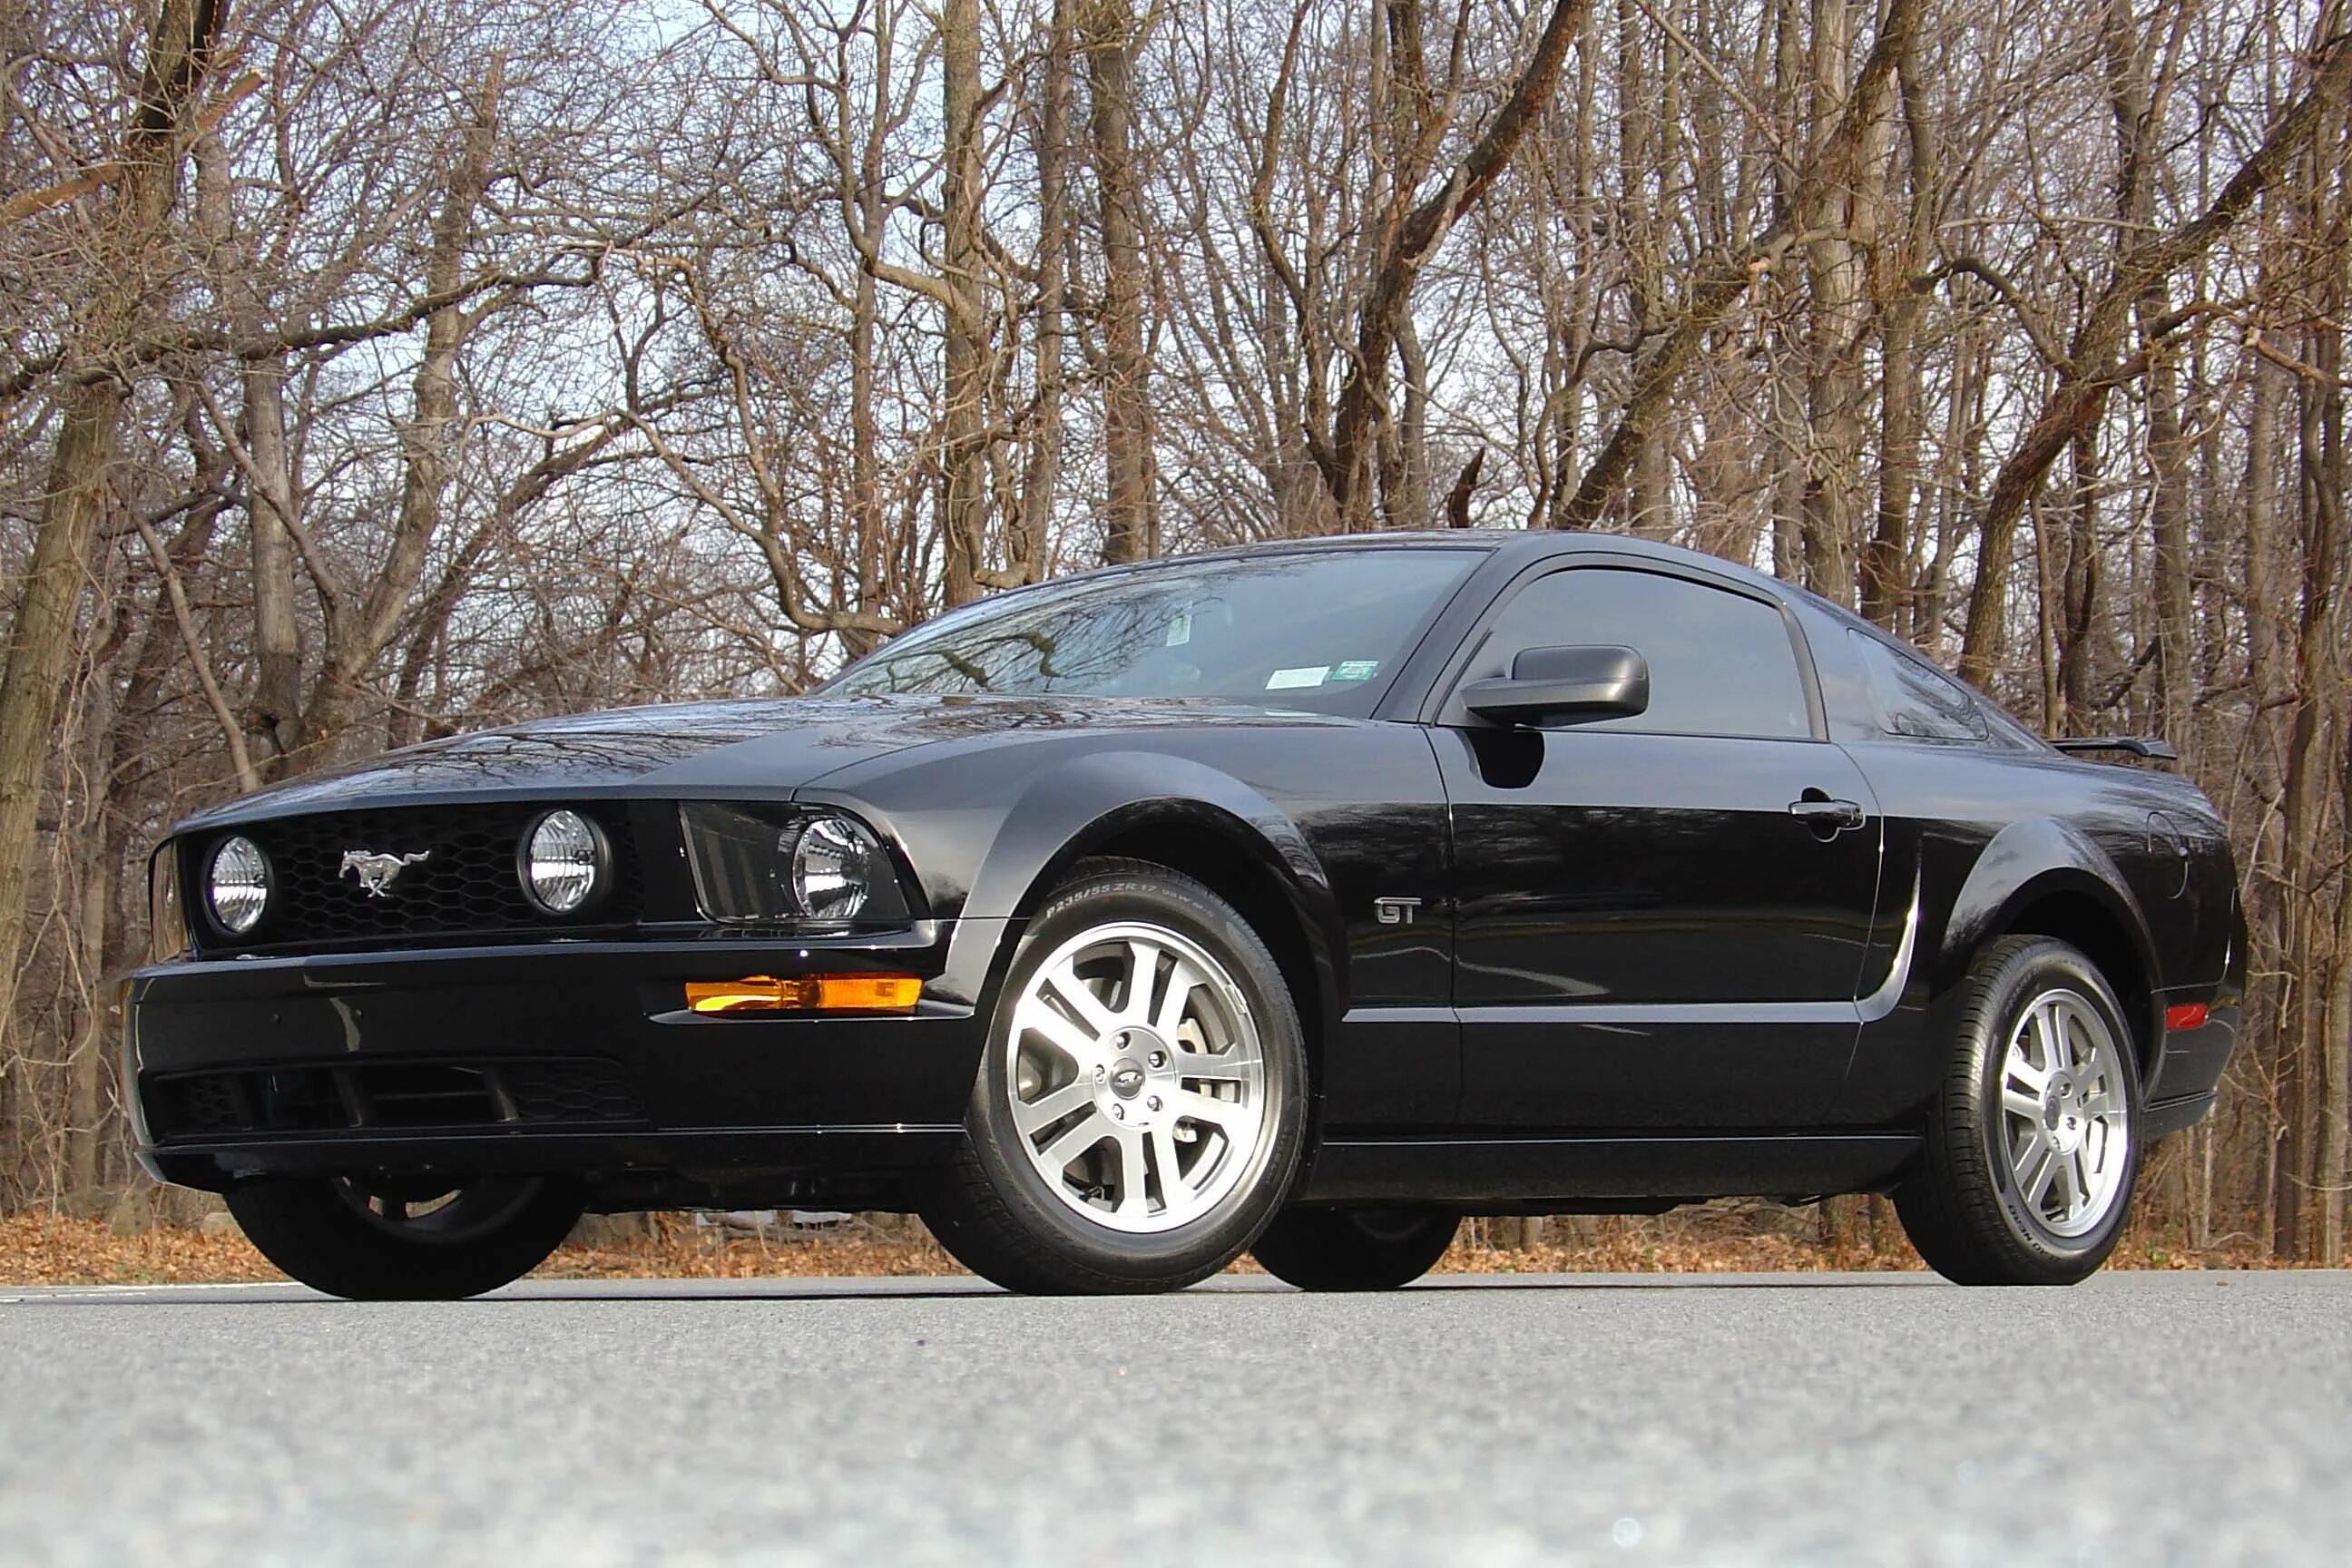 Ford Mustang gt 2005. Ford Mustang Shelby 2005. Ford Mustang 2005 черный. Форд Мустанг 2005 черный.